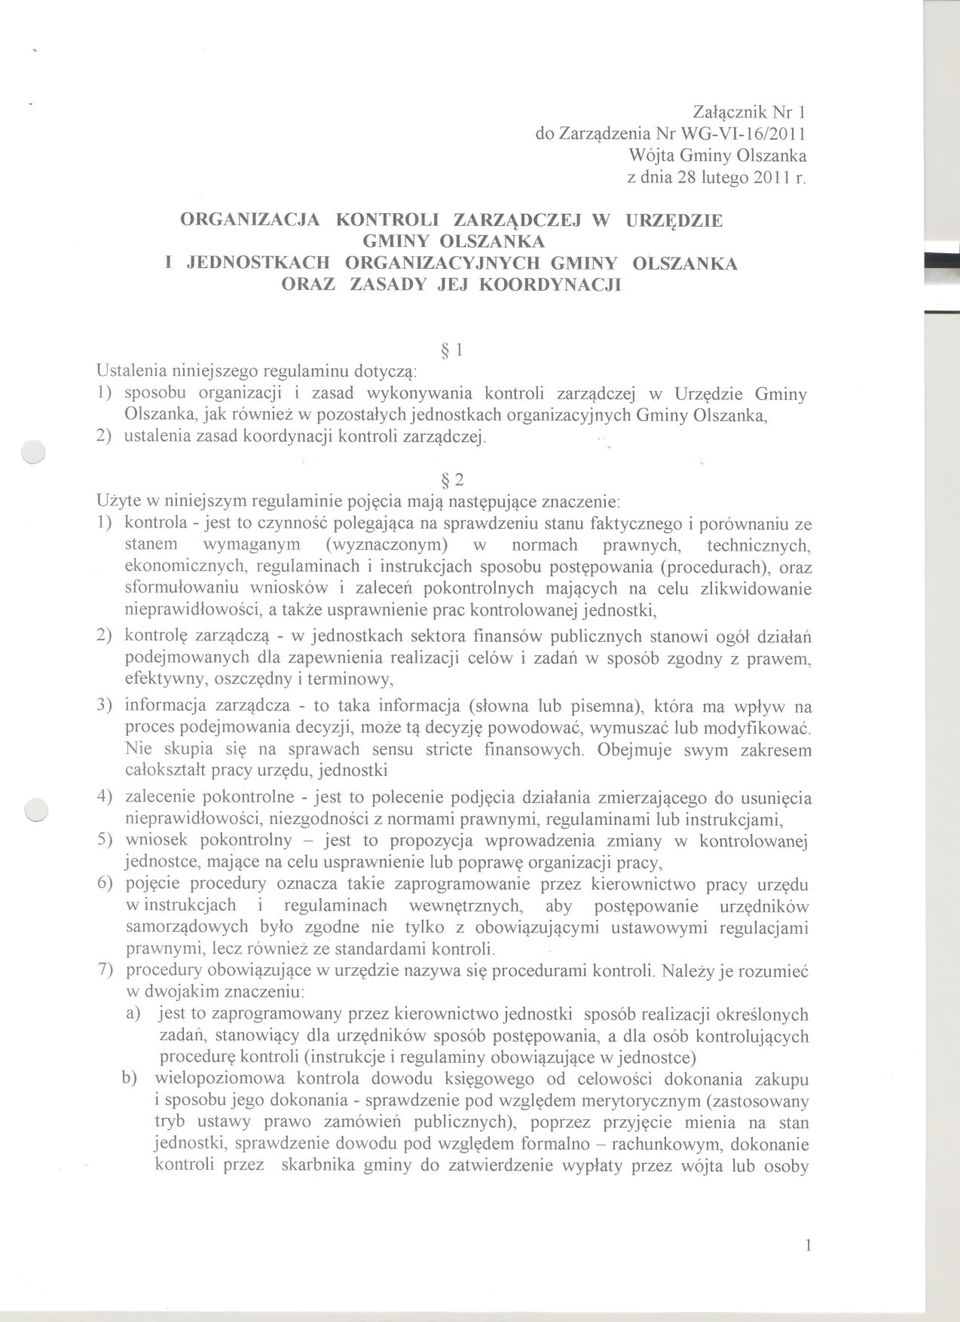 zasad wykonywania kontroli zarzadczej w Urzedzie Gminy Olszanka, jak równiez w pozostalych jednostkach organizacyjnych Gminy Olszanka, 2) ustalenia zasad koordynacji kontroli zarzadczej.